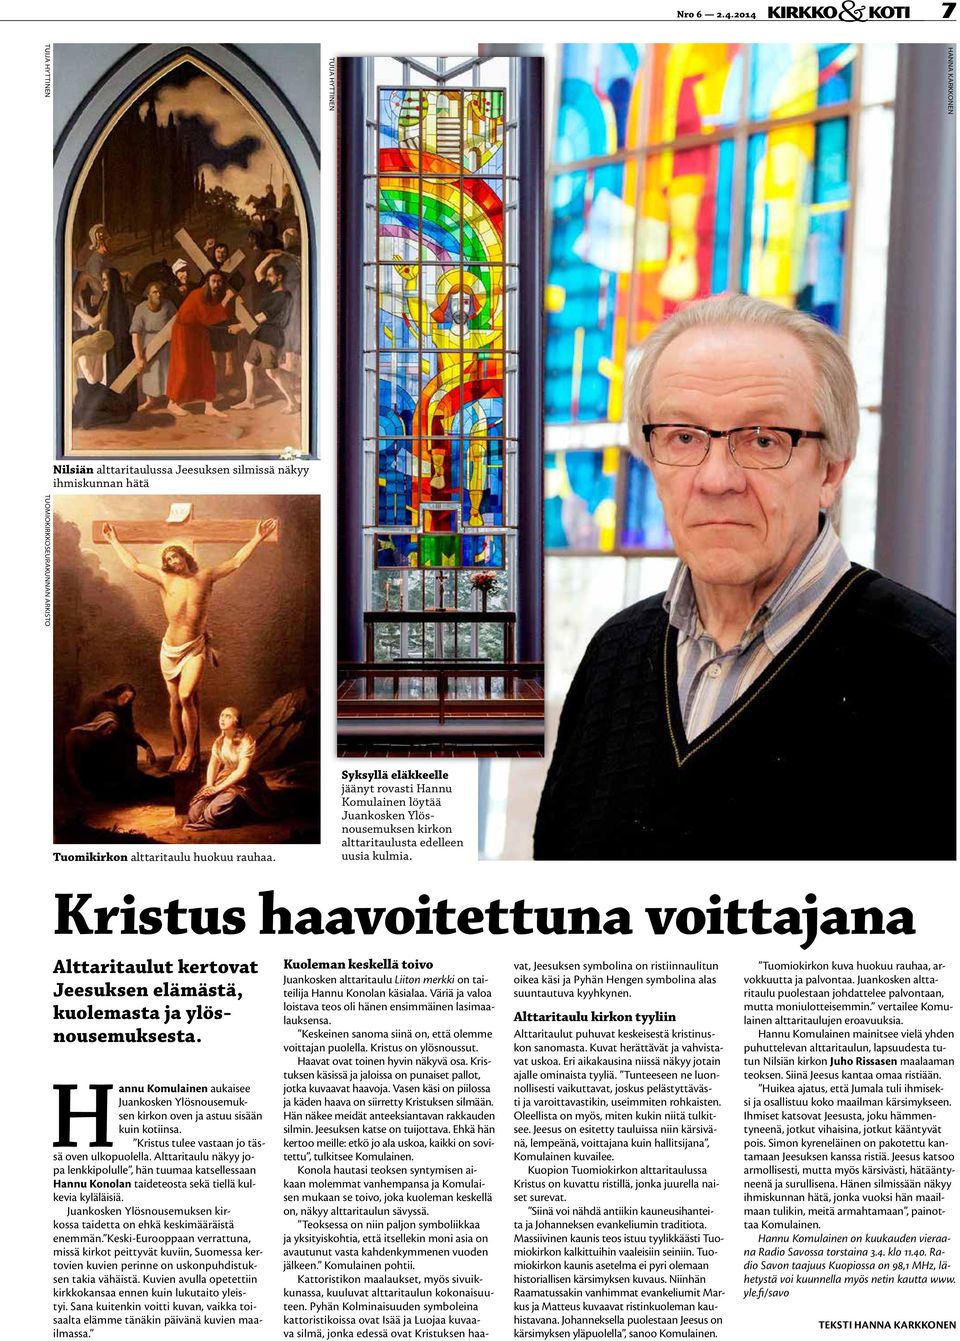 Syksyllä eläkkeelle jäänyt rovasti Hannu Komulainen löytää Juankosken Ylösnousemuksen kirkon alttaritaulusta edelleen uusia kulmia.